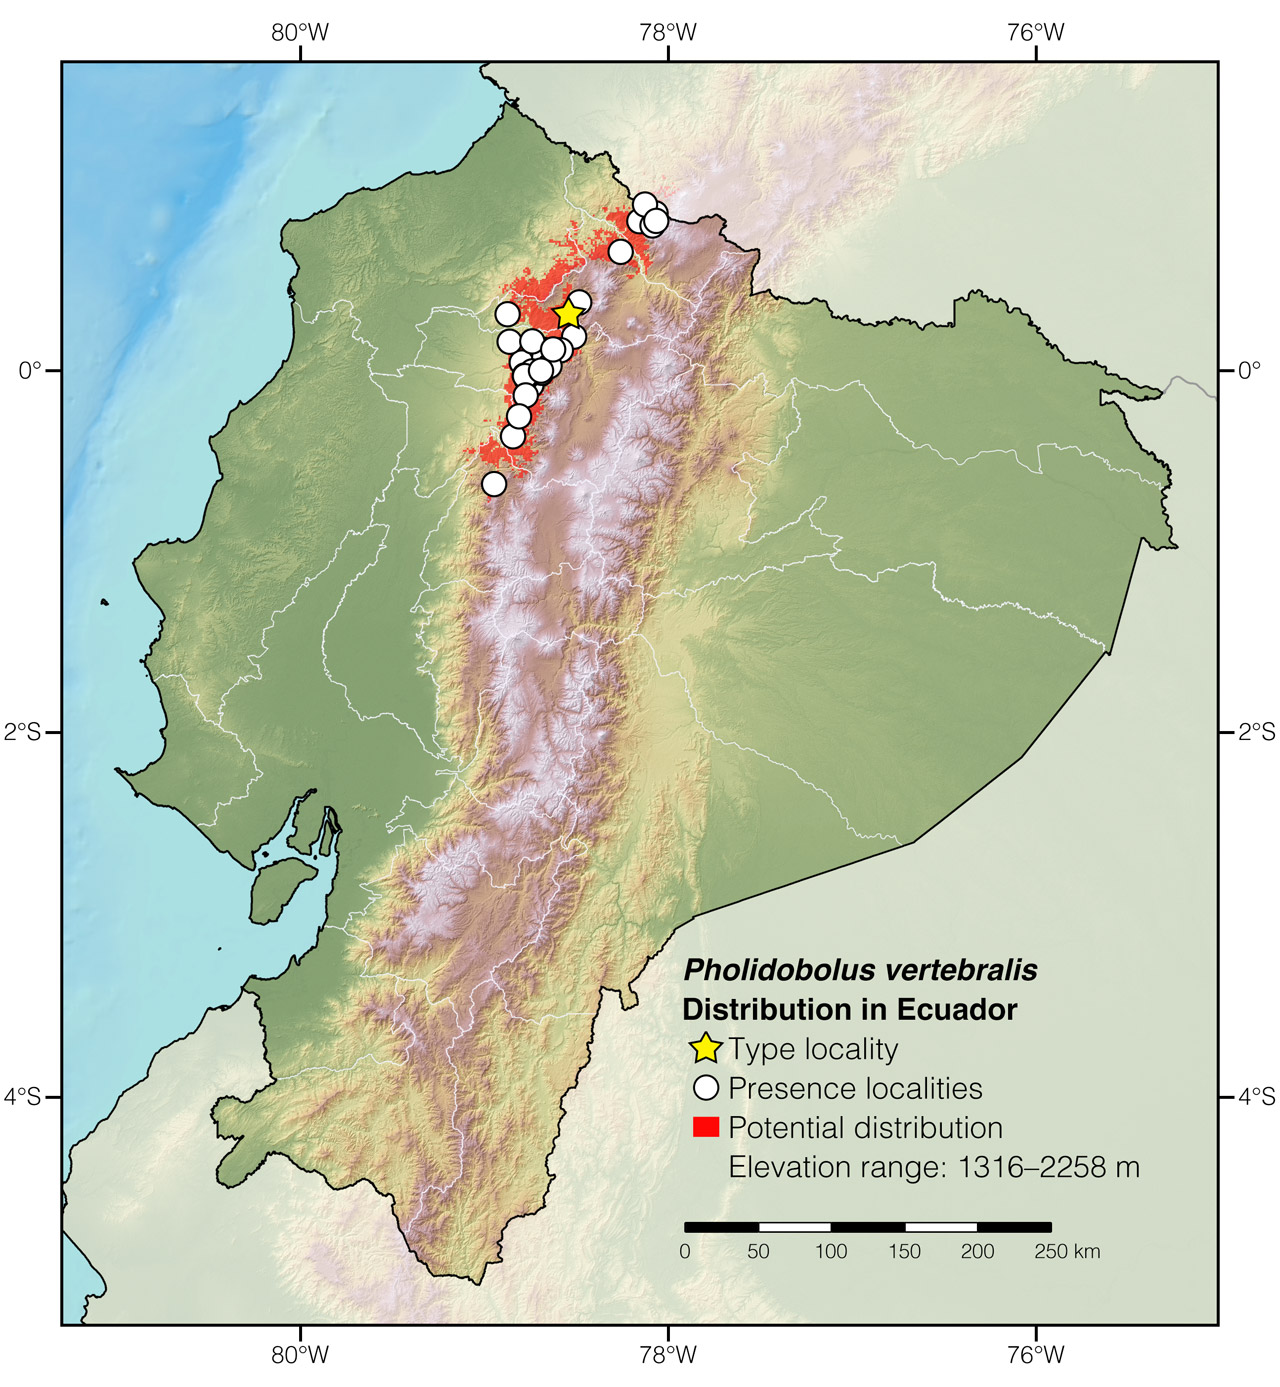 Distribution of Pholidobolus vertebralis in Ecuador